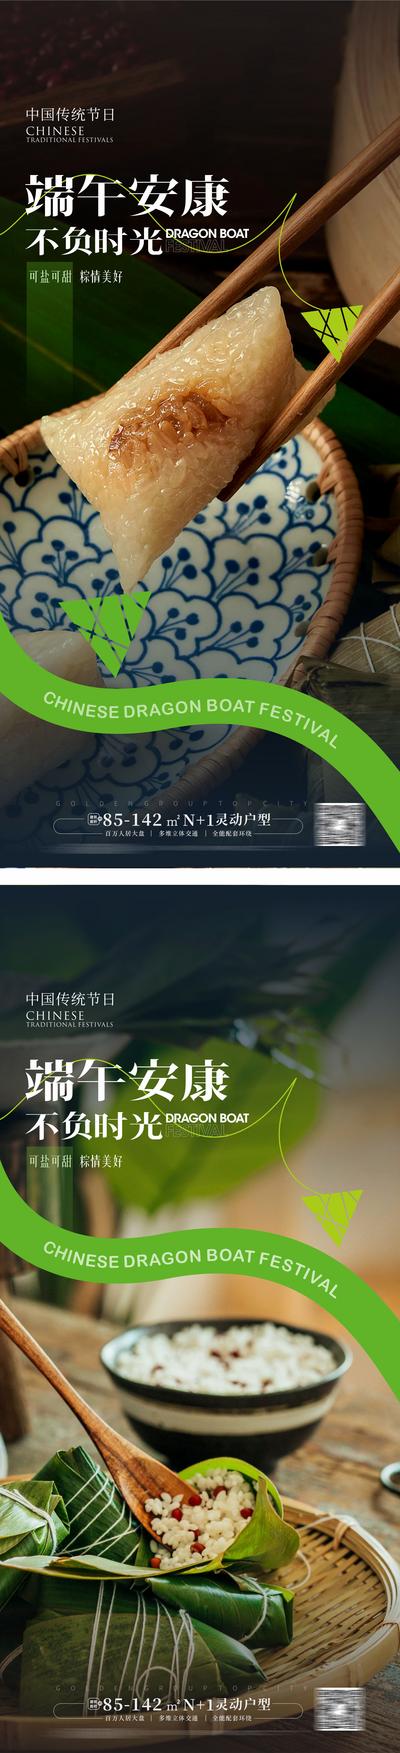 南门网 广告 节日 海报 端午 系列 中国传统节日 端午节 粽子 浓情端午